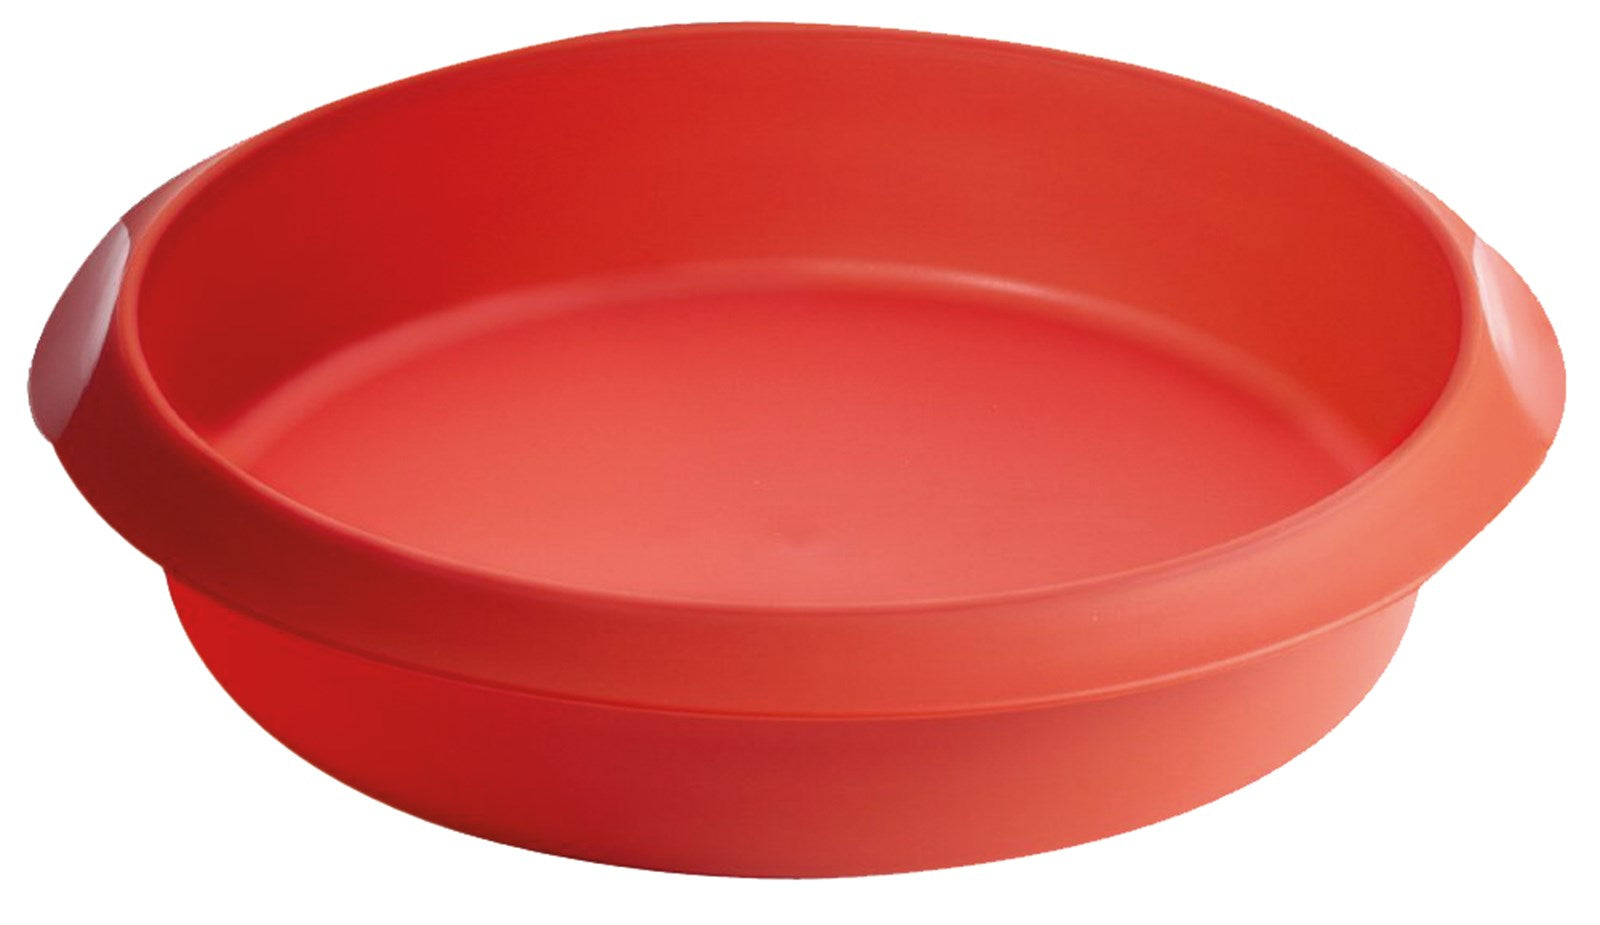 Backform Cake rund Rot, 26 cm in Rot präsentiert im Onlineshop von KAQTU Design AG. Backen ist von Lékué